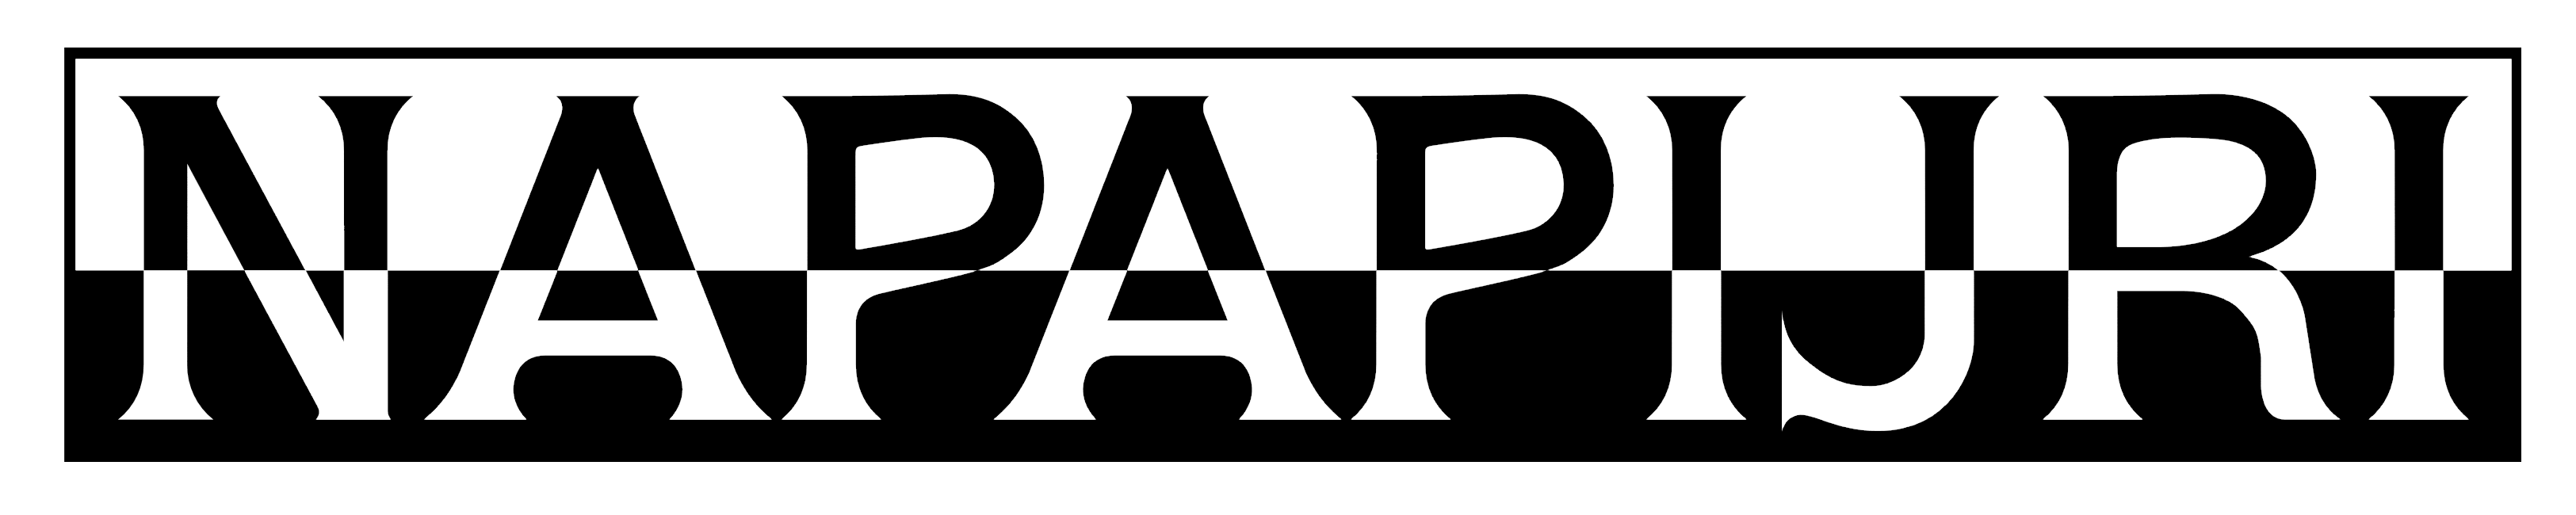 Napapijri Logo - Napapijri